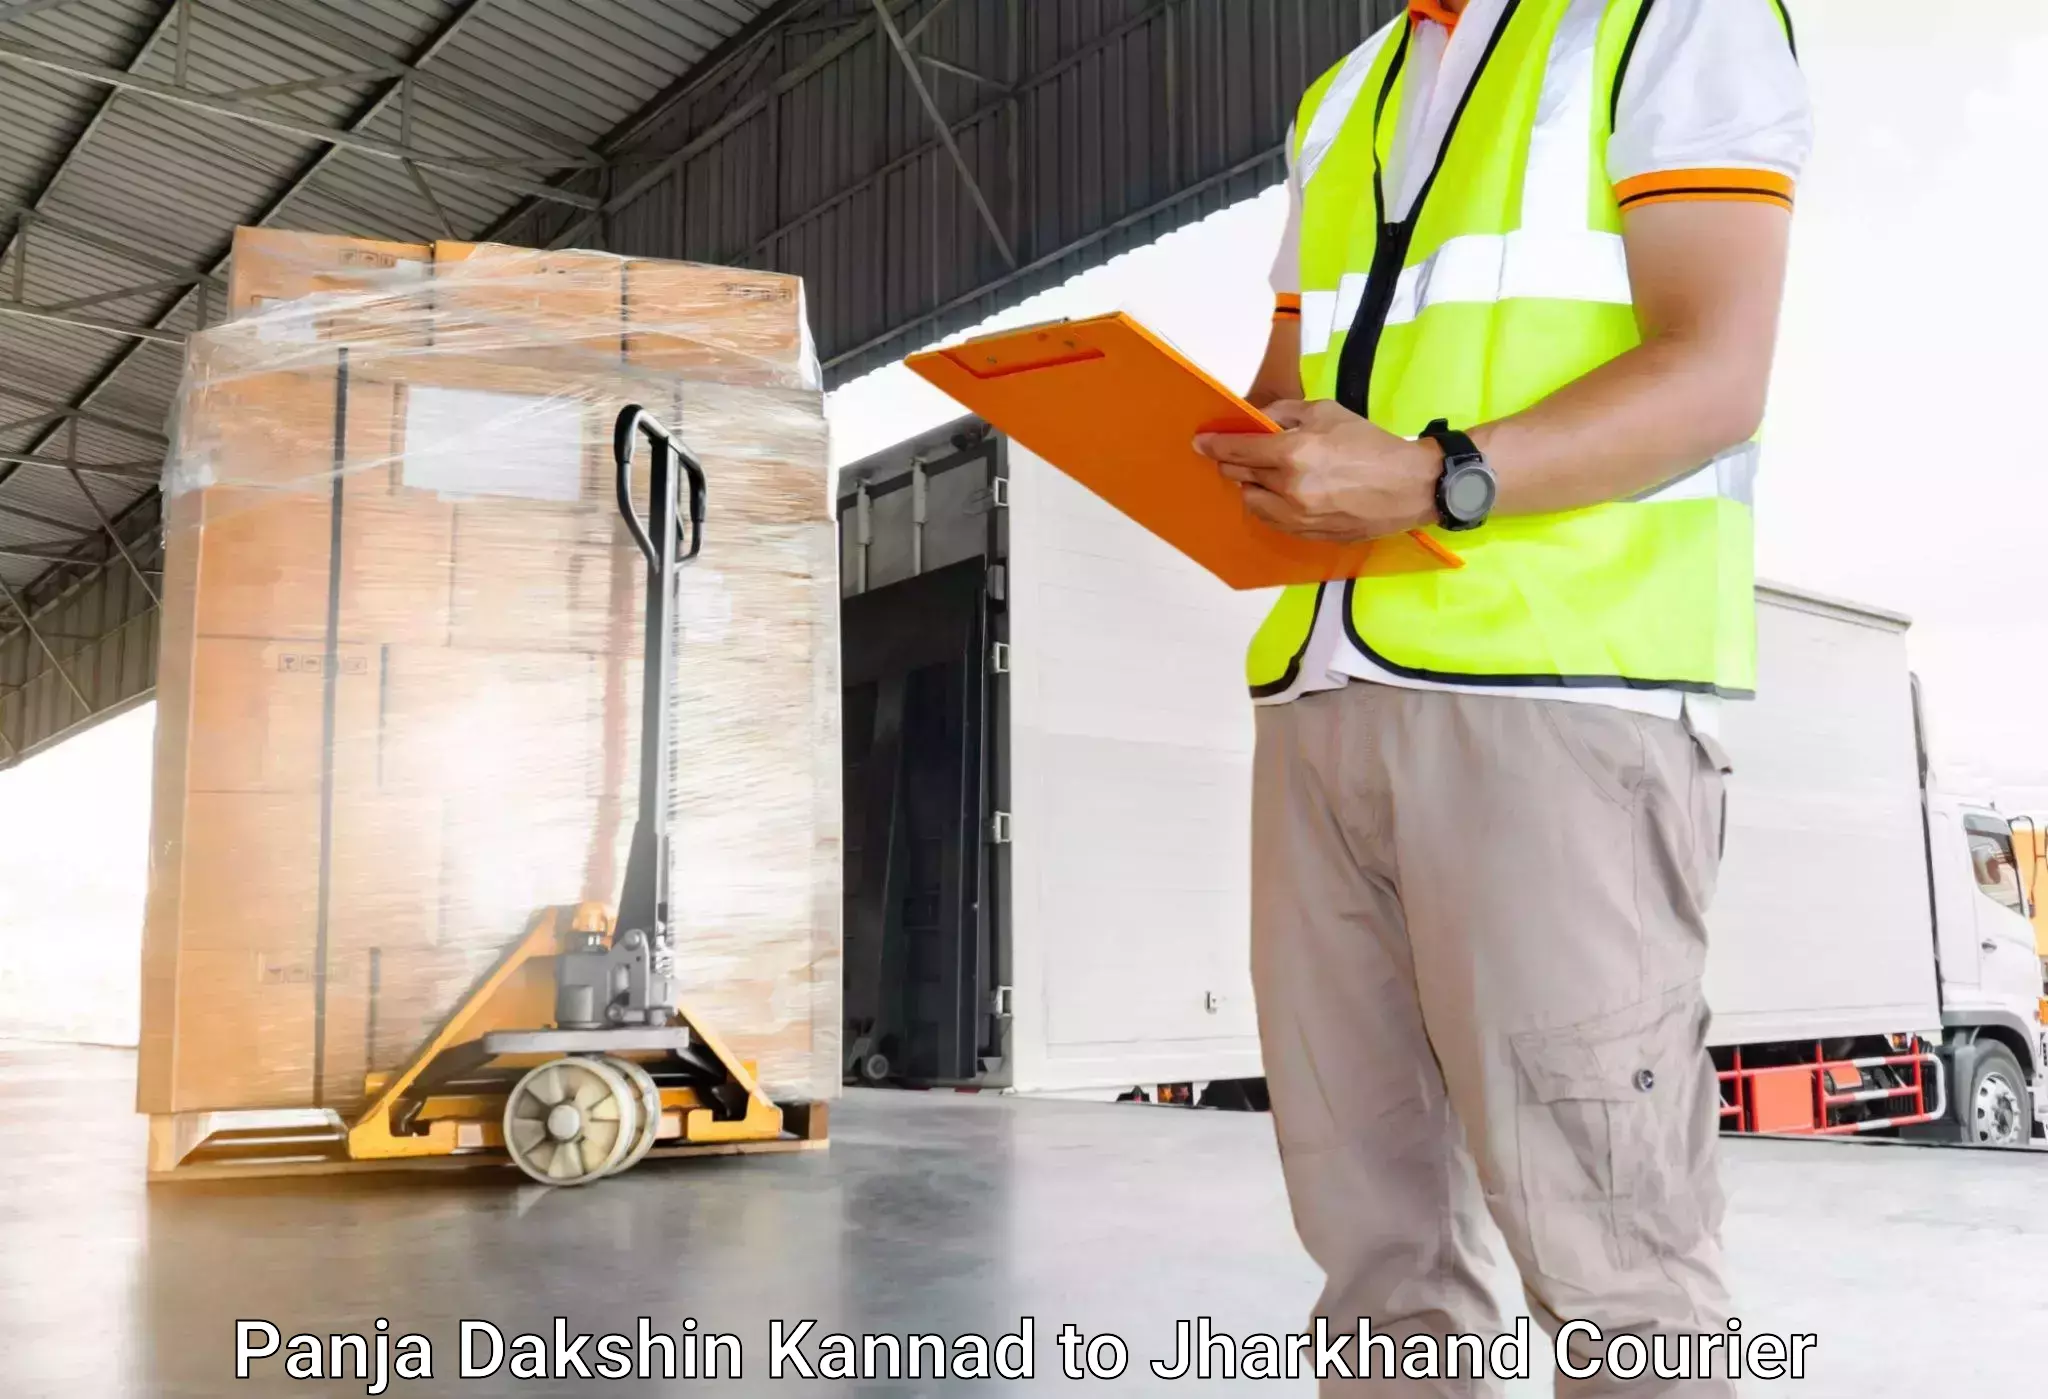 Efficient baggage courier system Panja Dakshin Kannad to Rajdhanwar